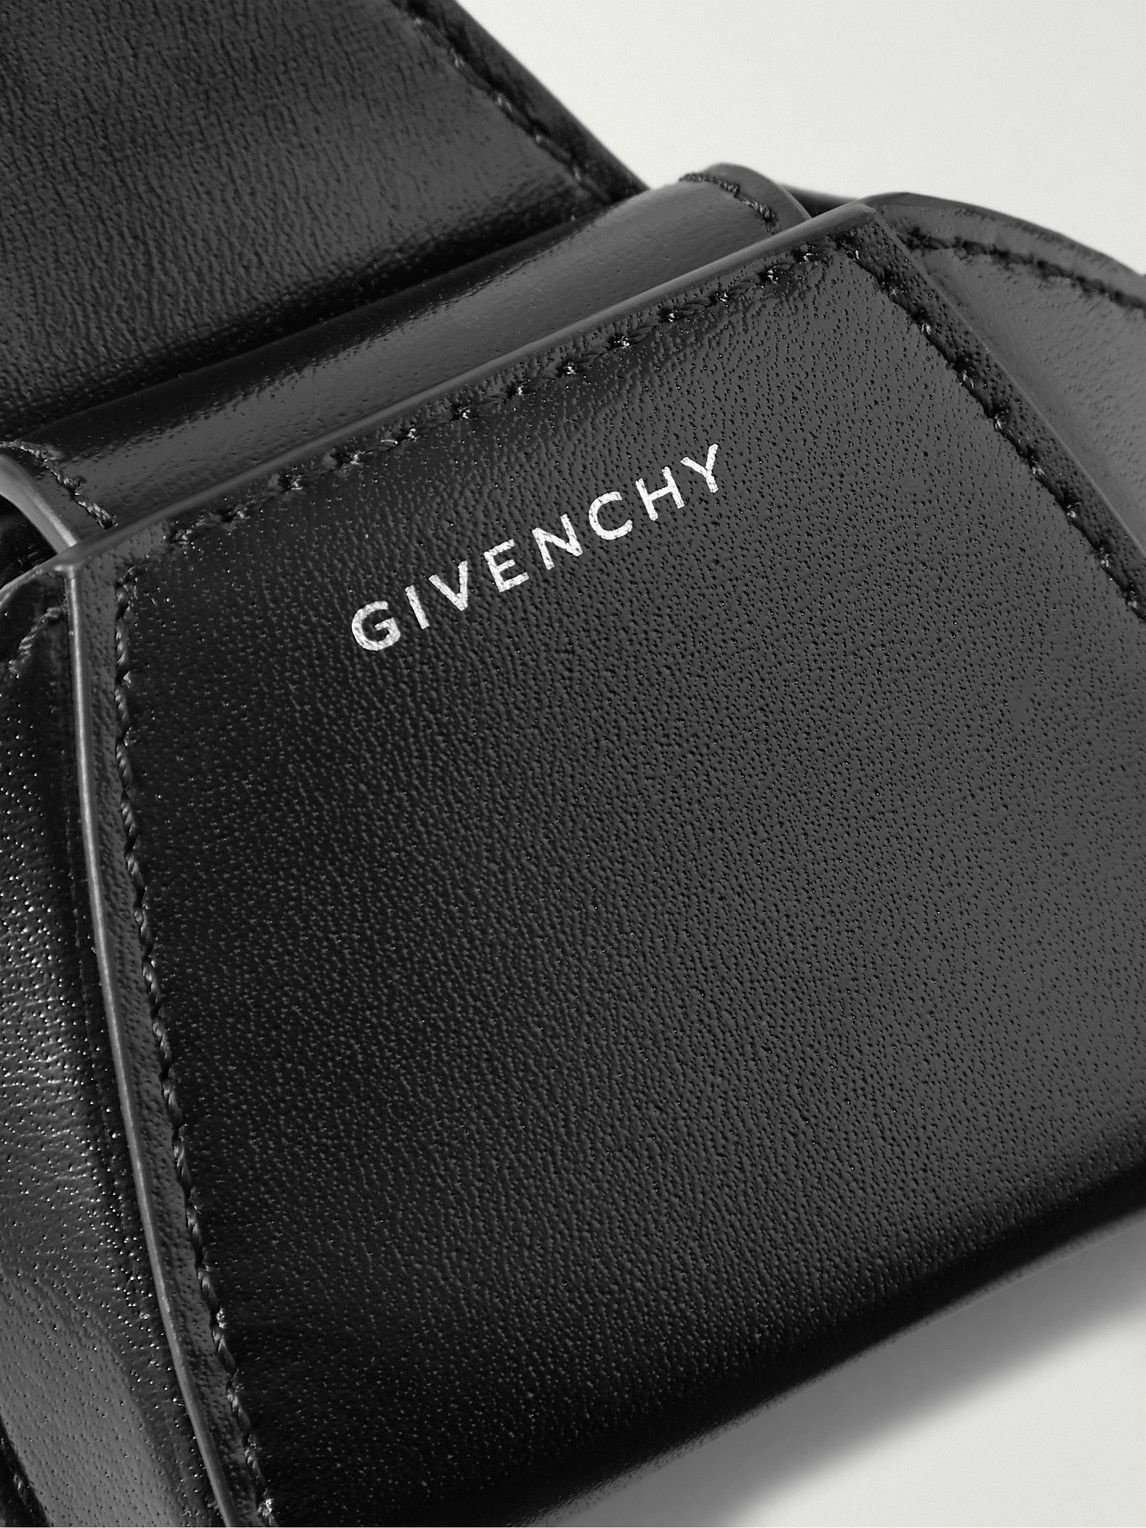 Givenchy - Antigona Leather AirPods Case Givenchy